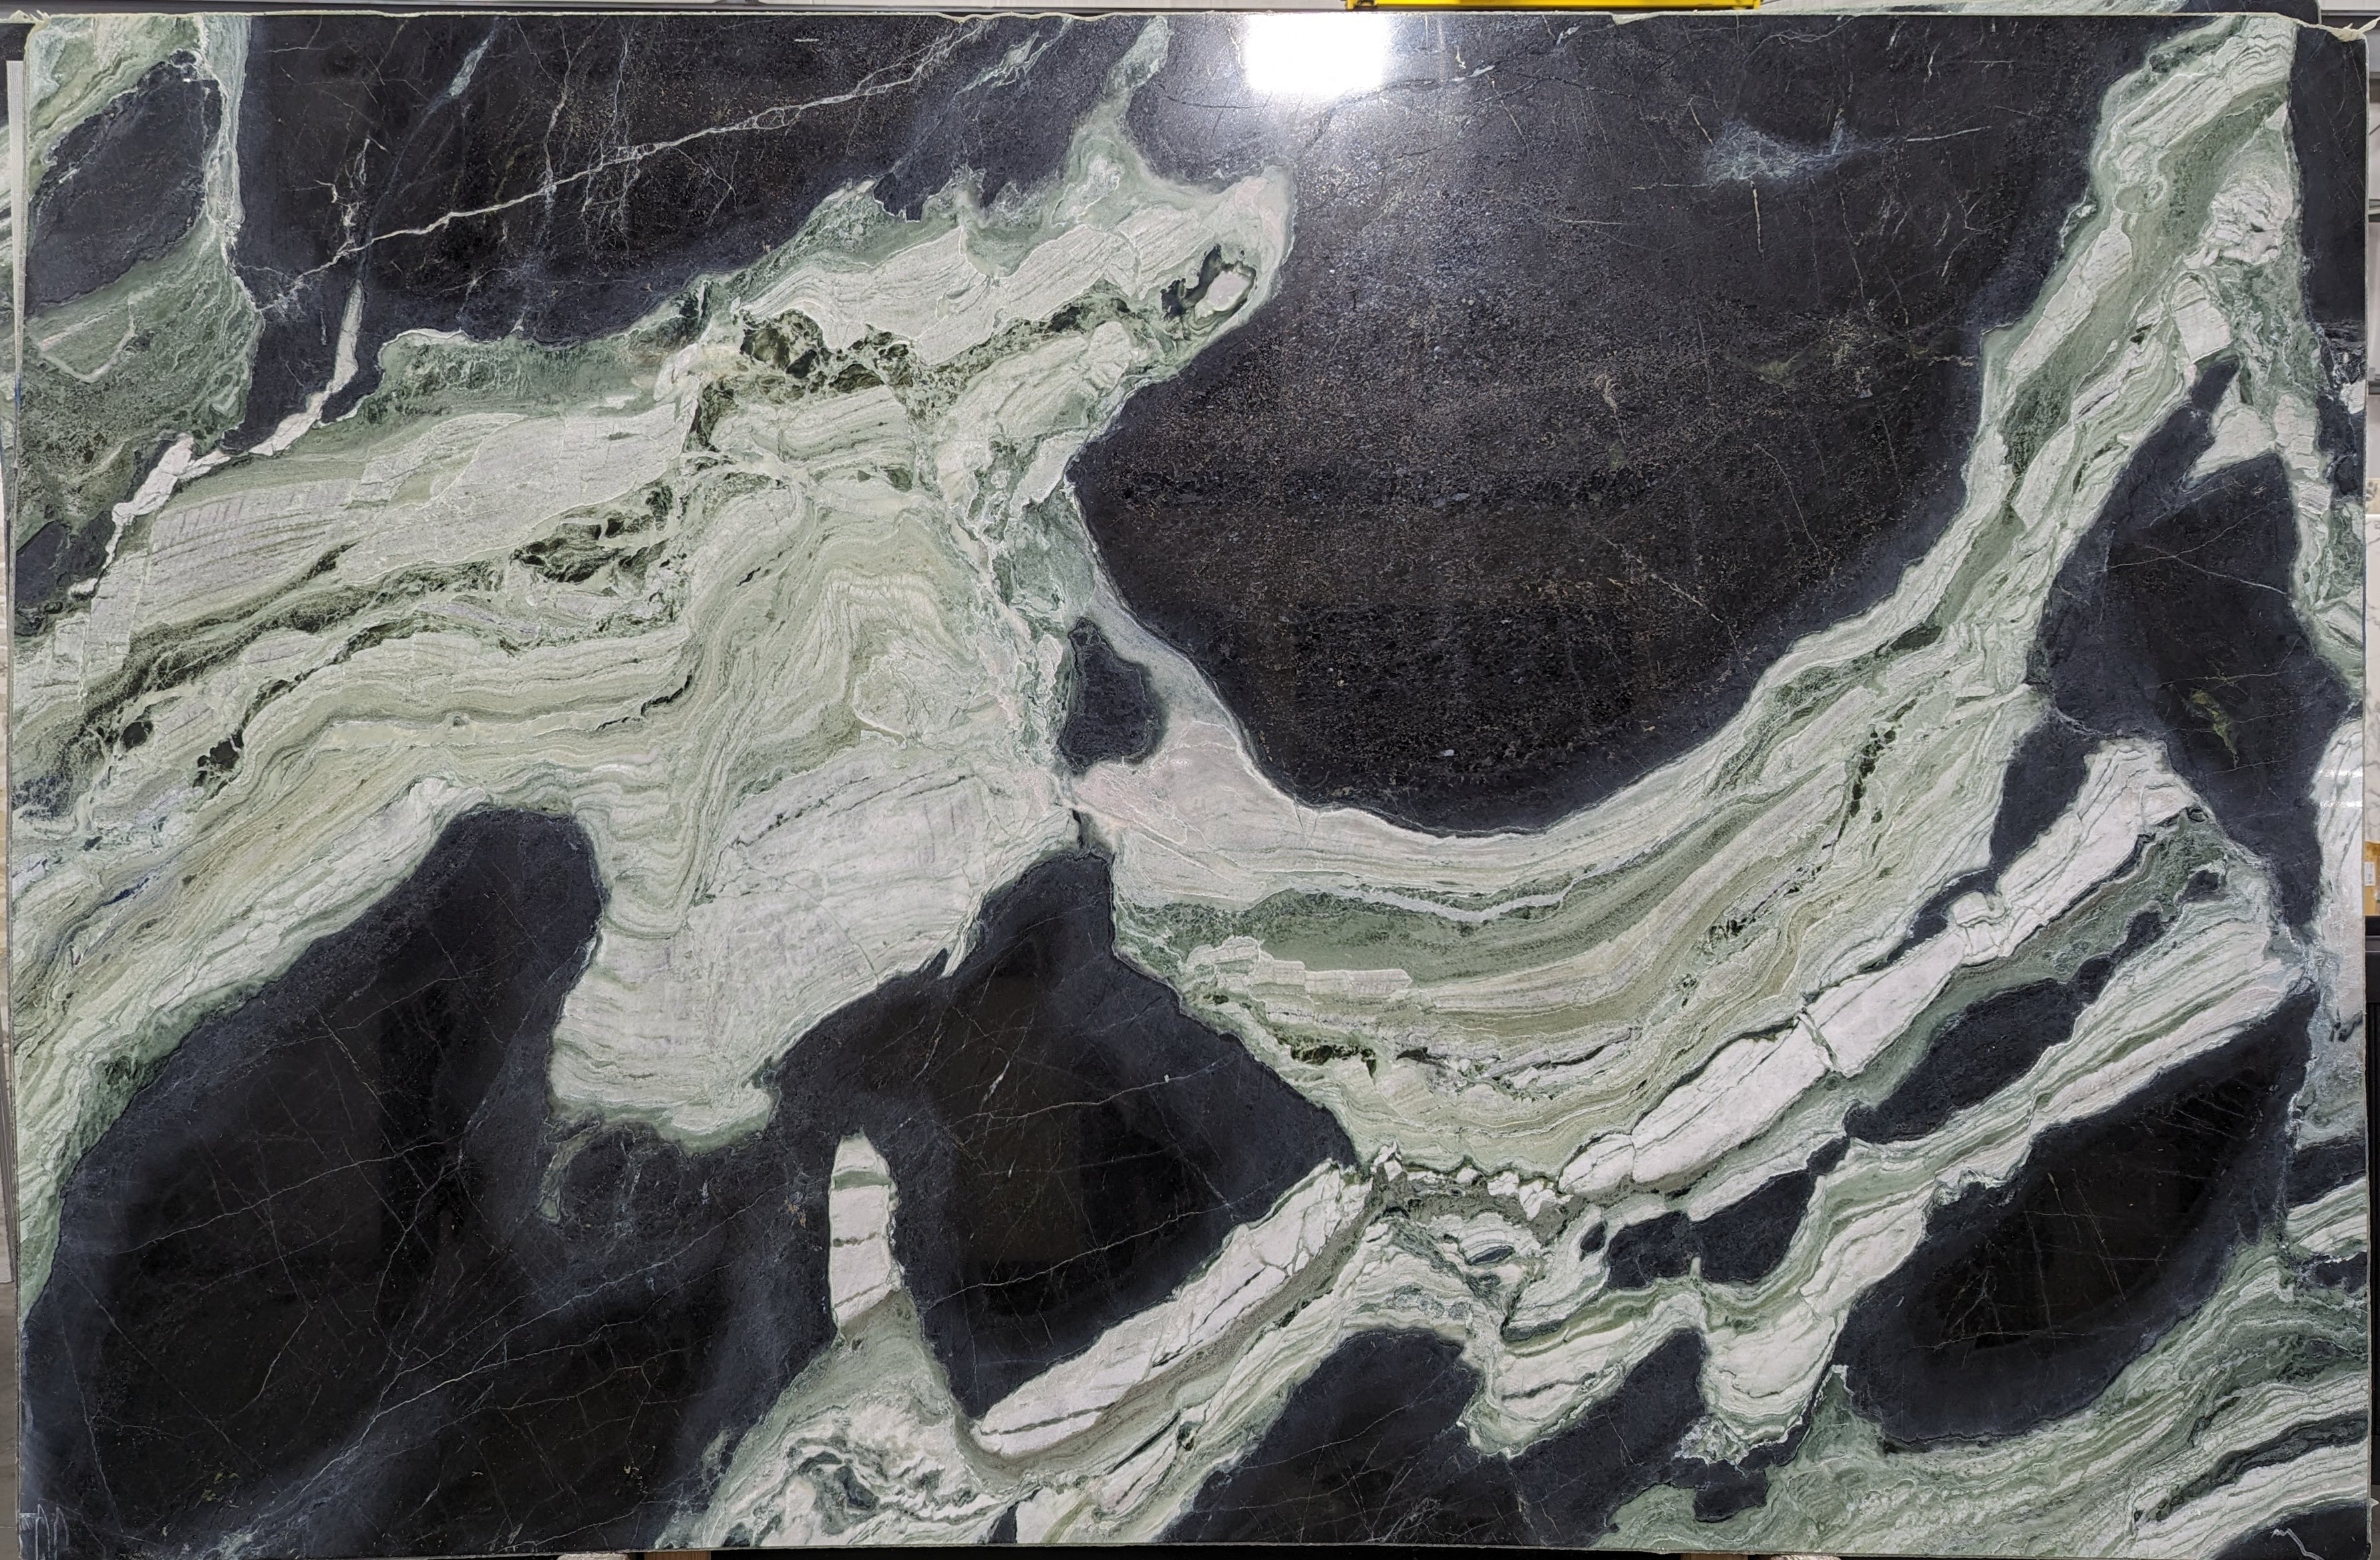  White Jade Marble Slab 3/4  Polished Stone - 38822#16 -  77x118 